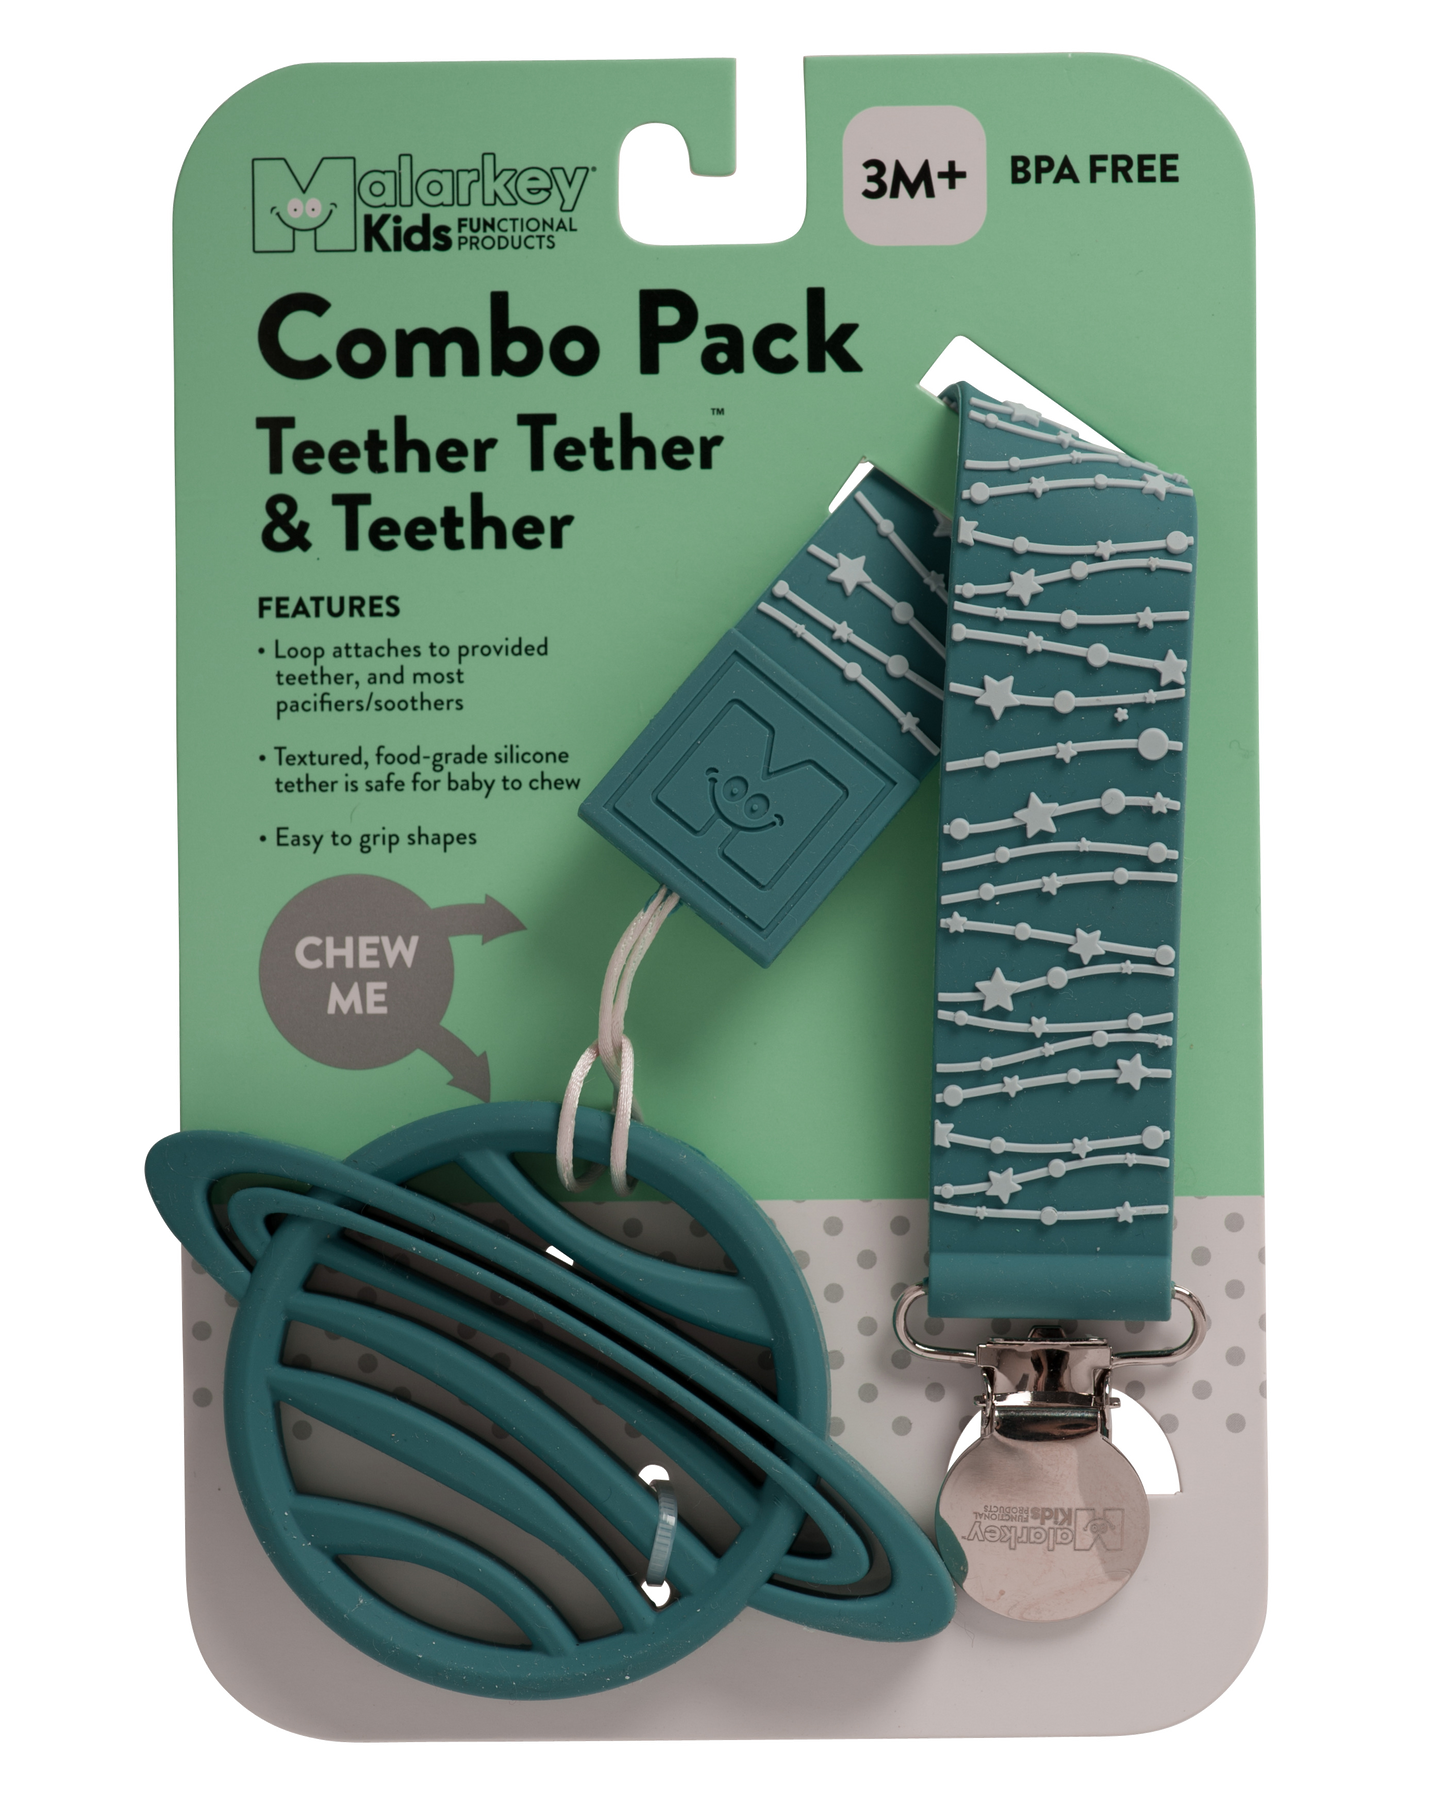 Teether Tether & Teether - Stars & Saturn Teether Tether & Teether Malarkey Kids 